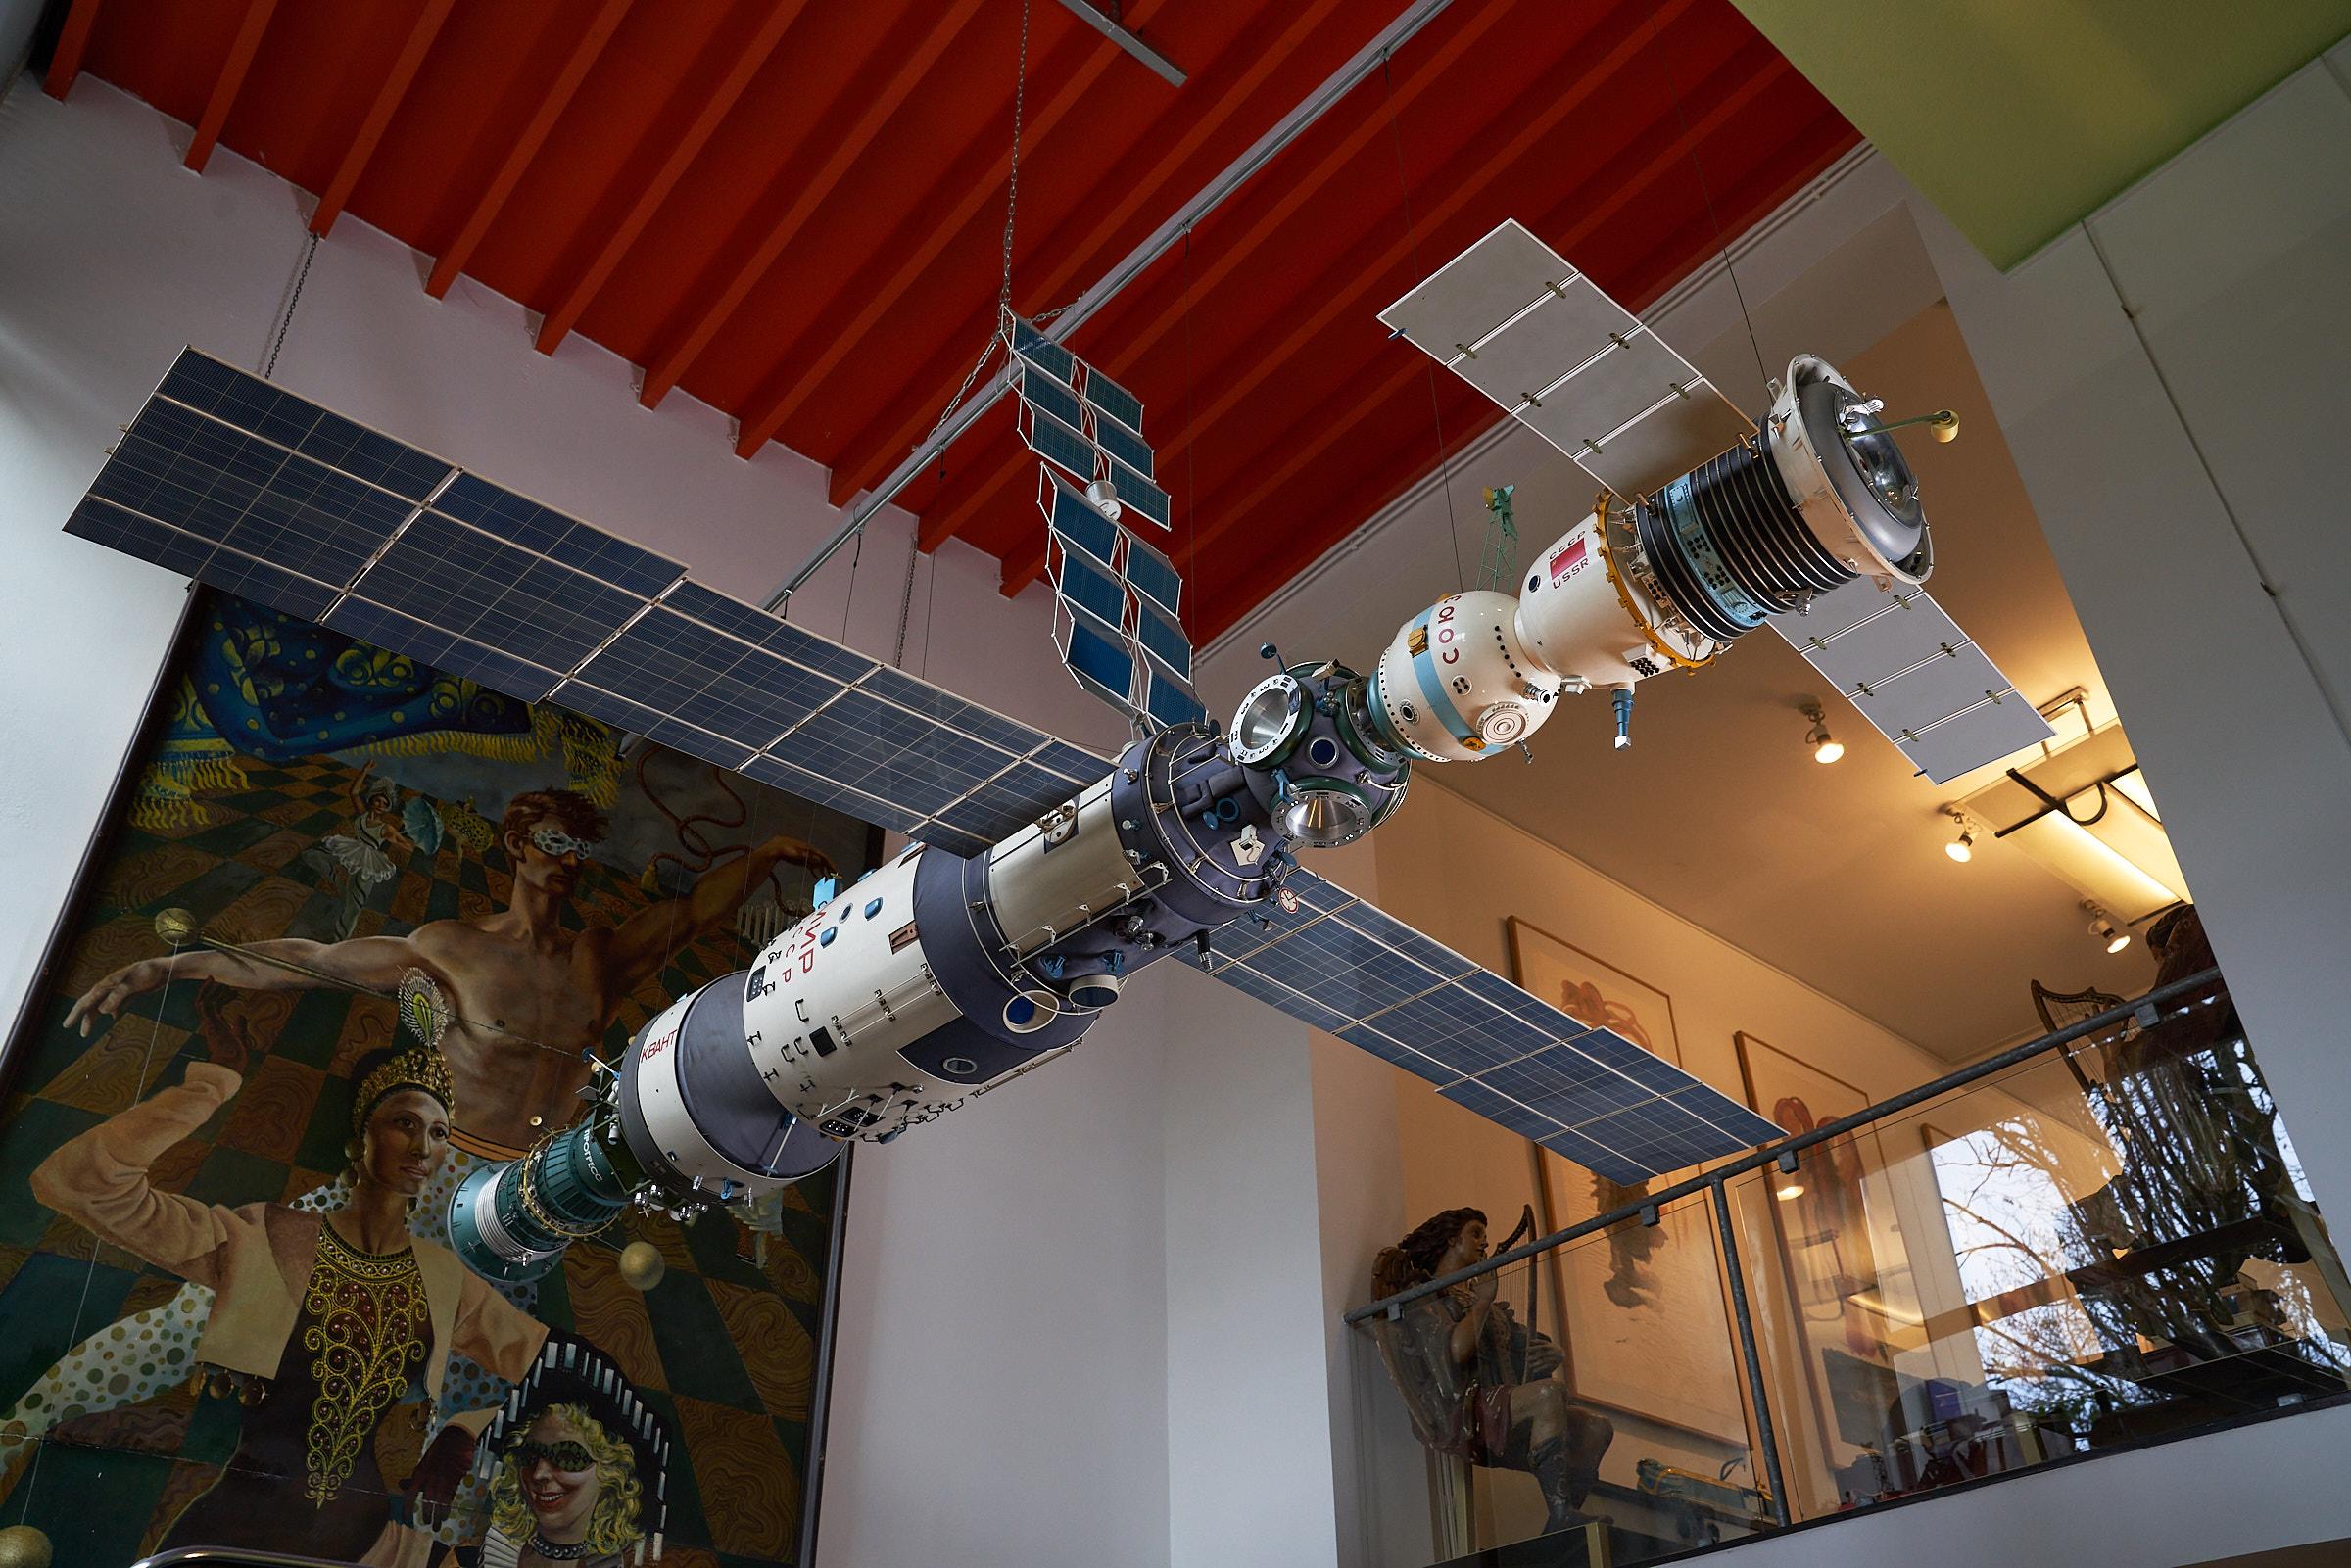 Wir präsentieren ein außergewöhnliches Stück Raumfahrtgeschichte - das maßstabsgetreue Originalmodell des Mir-Prototyps aus Russland. Dieses bemerkenswerte Artefakt befindet sich seit 30 Jahren in unserem Besitz und wird wie ein wertvolles